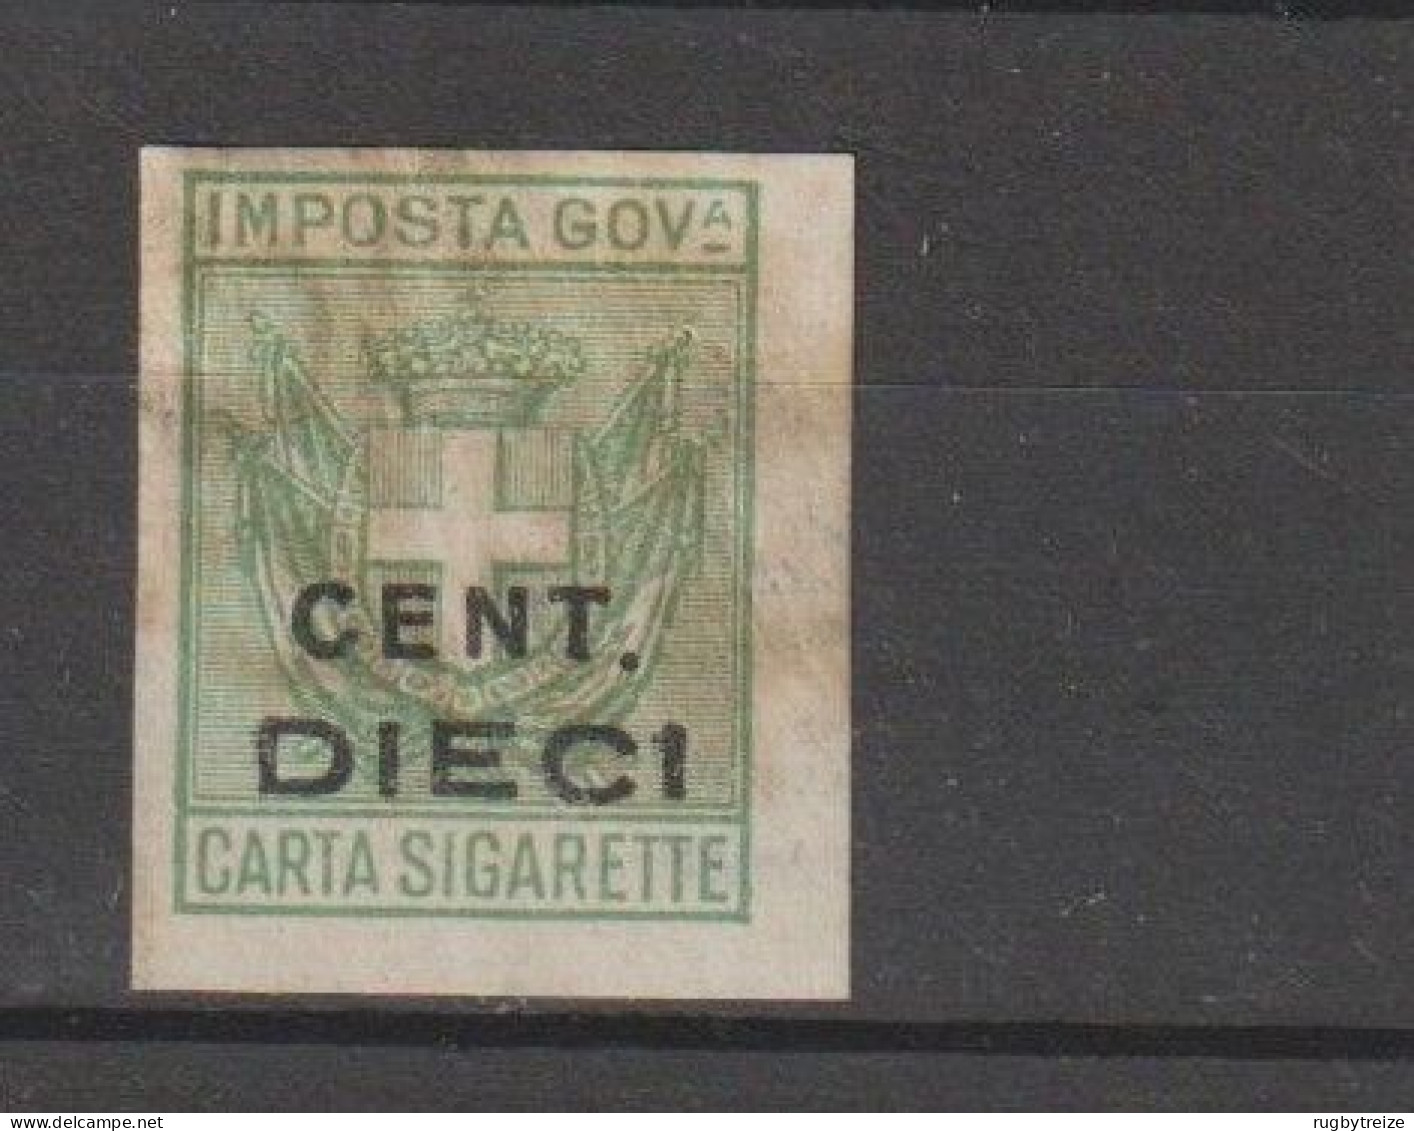 7330 MARCA DA BOLLO - CARTA SIGARETTE CENT. DIECI  FISCAL CIGARETTE FAG - Steuermarken